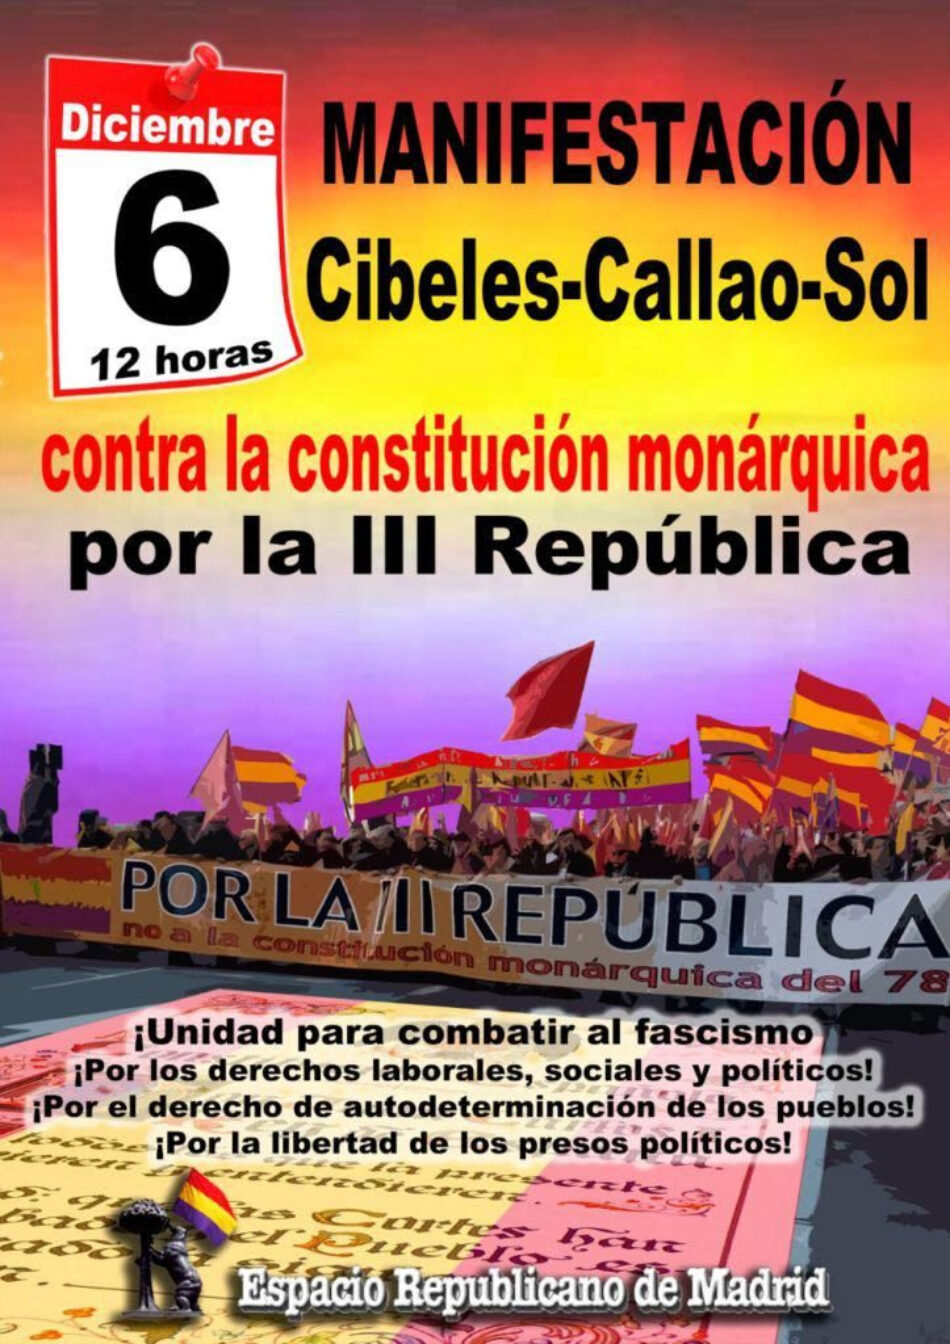 Manifestación 6D: Frente al fascismo, la monarquía y su constitución, III República